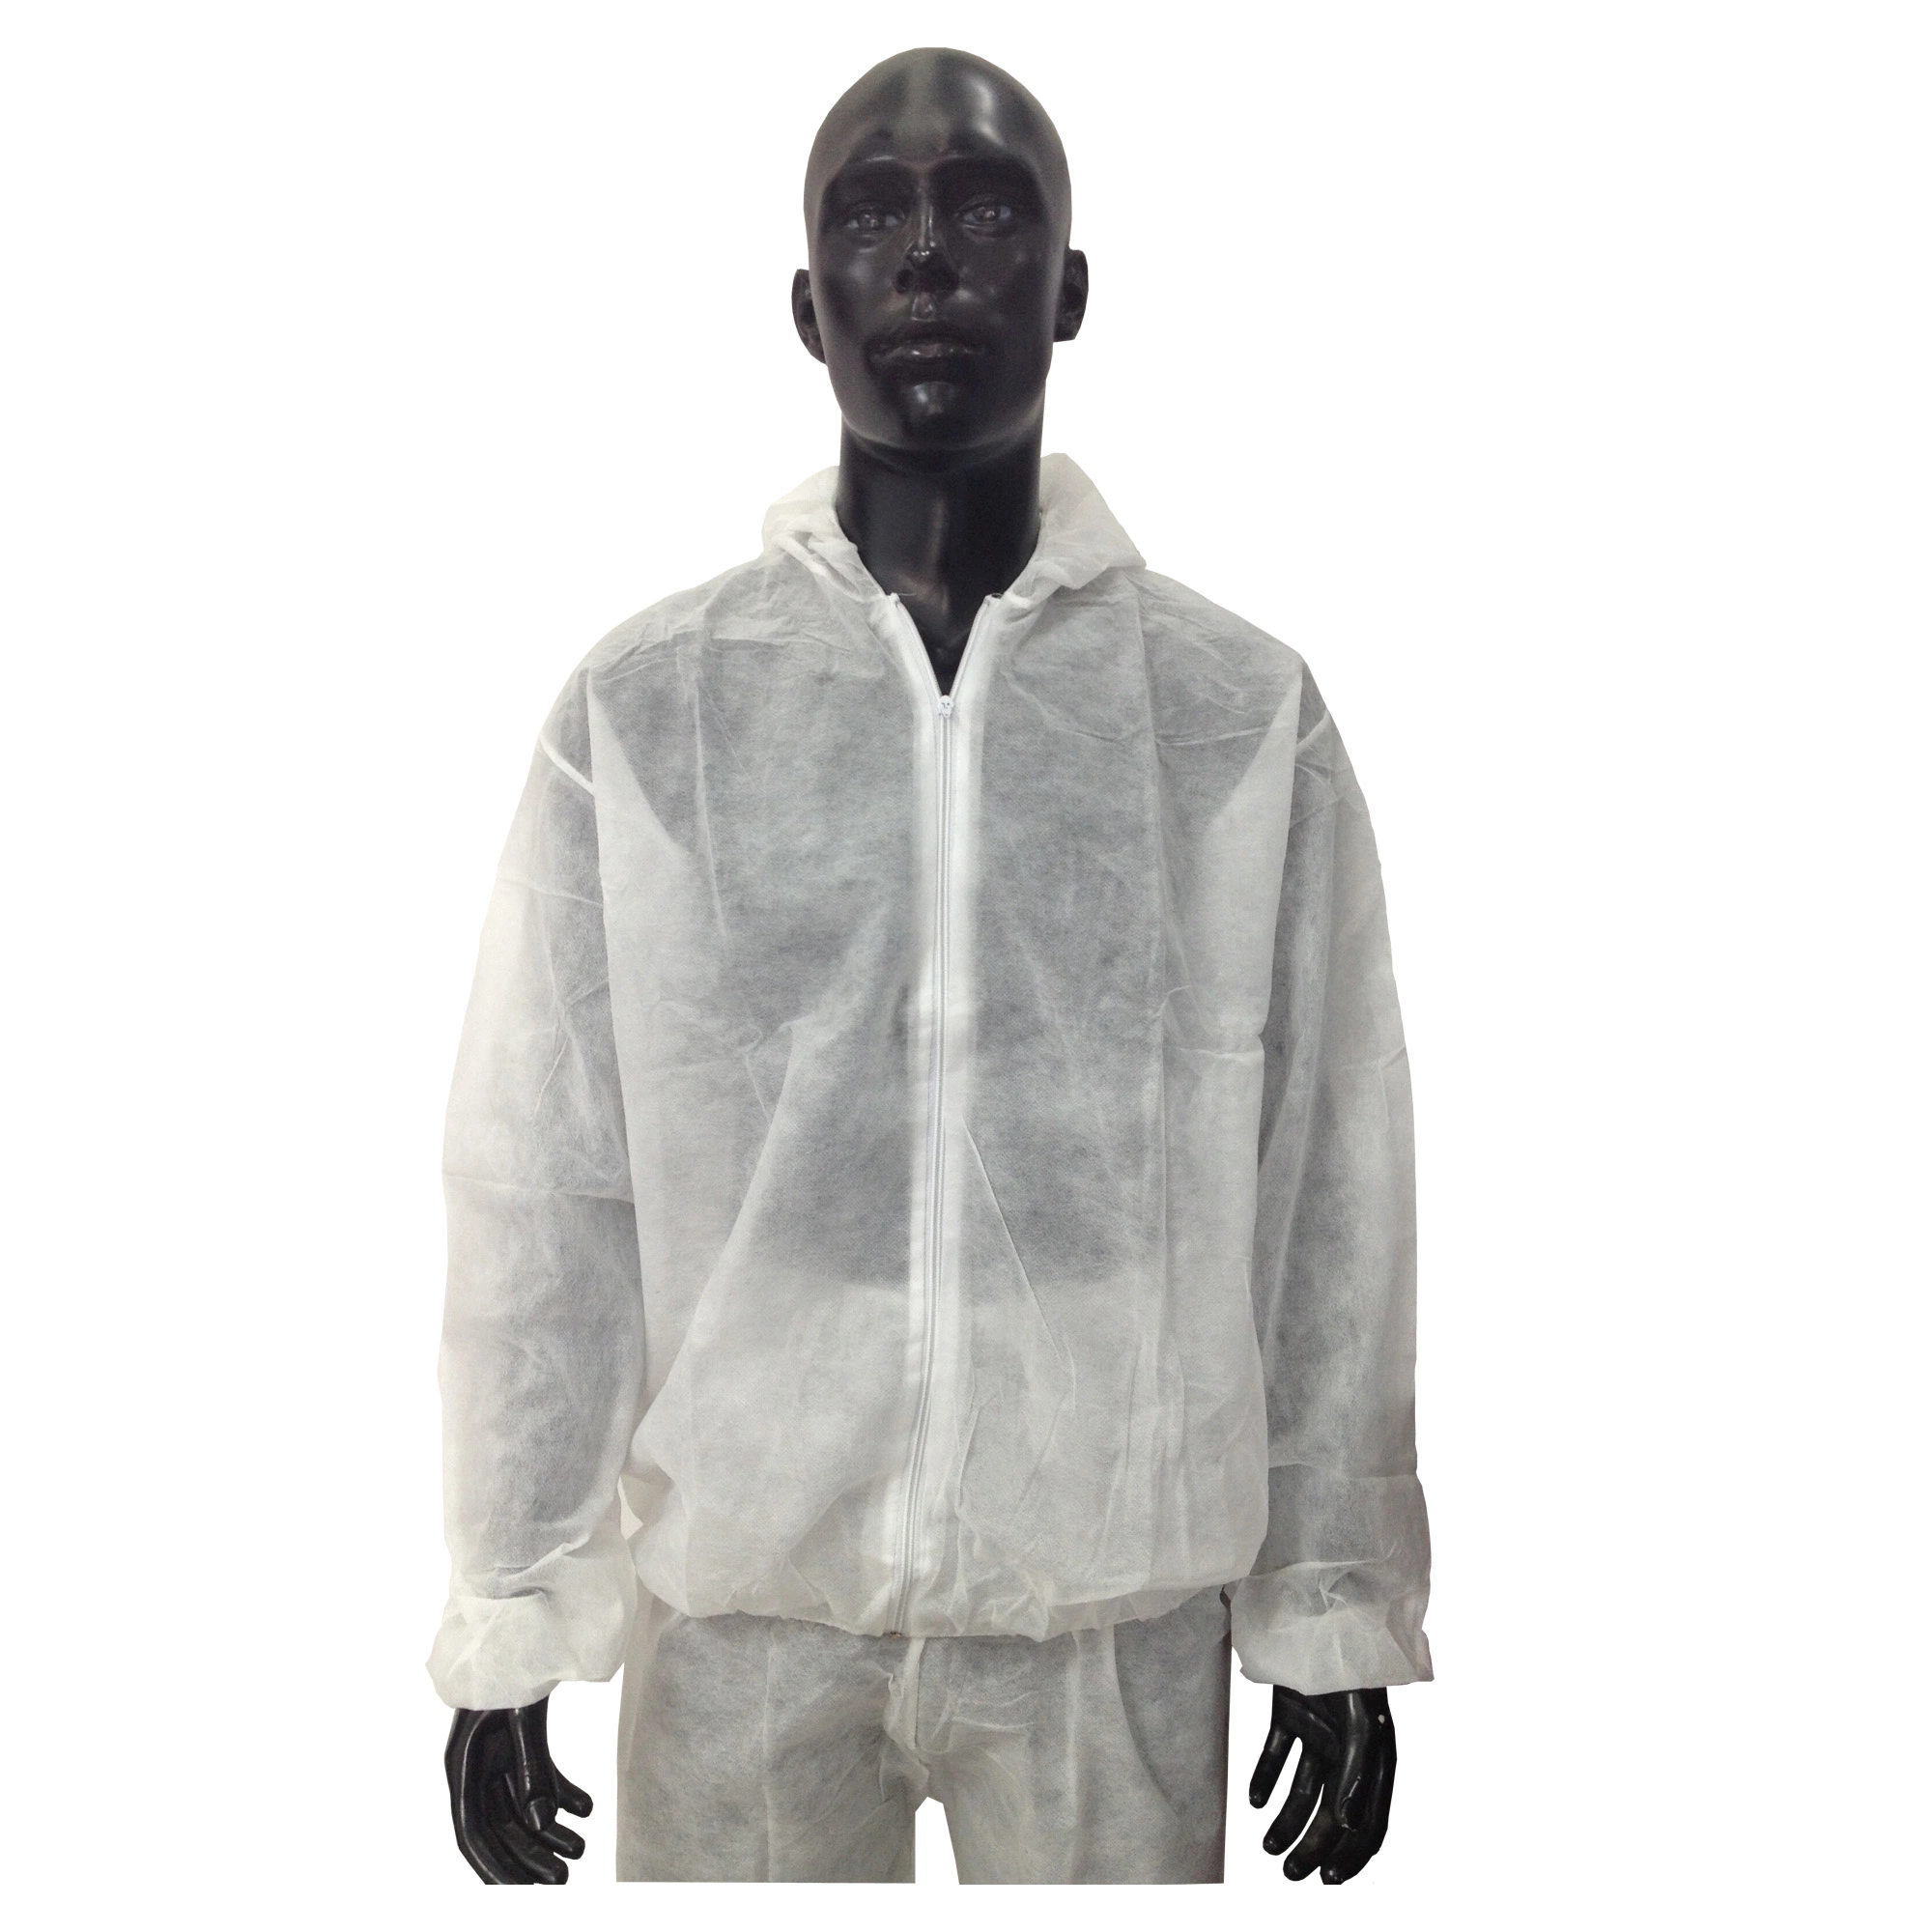 Nonwoven Disposable Protective Jacket, Safety Jacket, Jacket Workwear